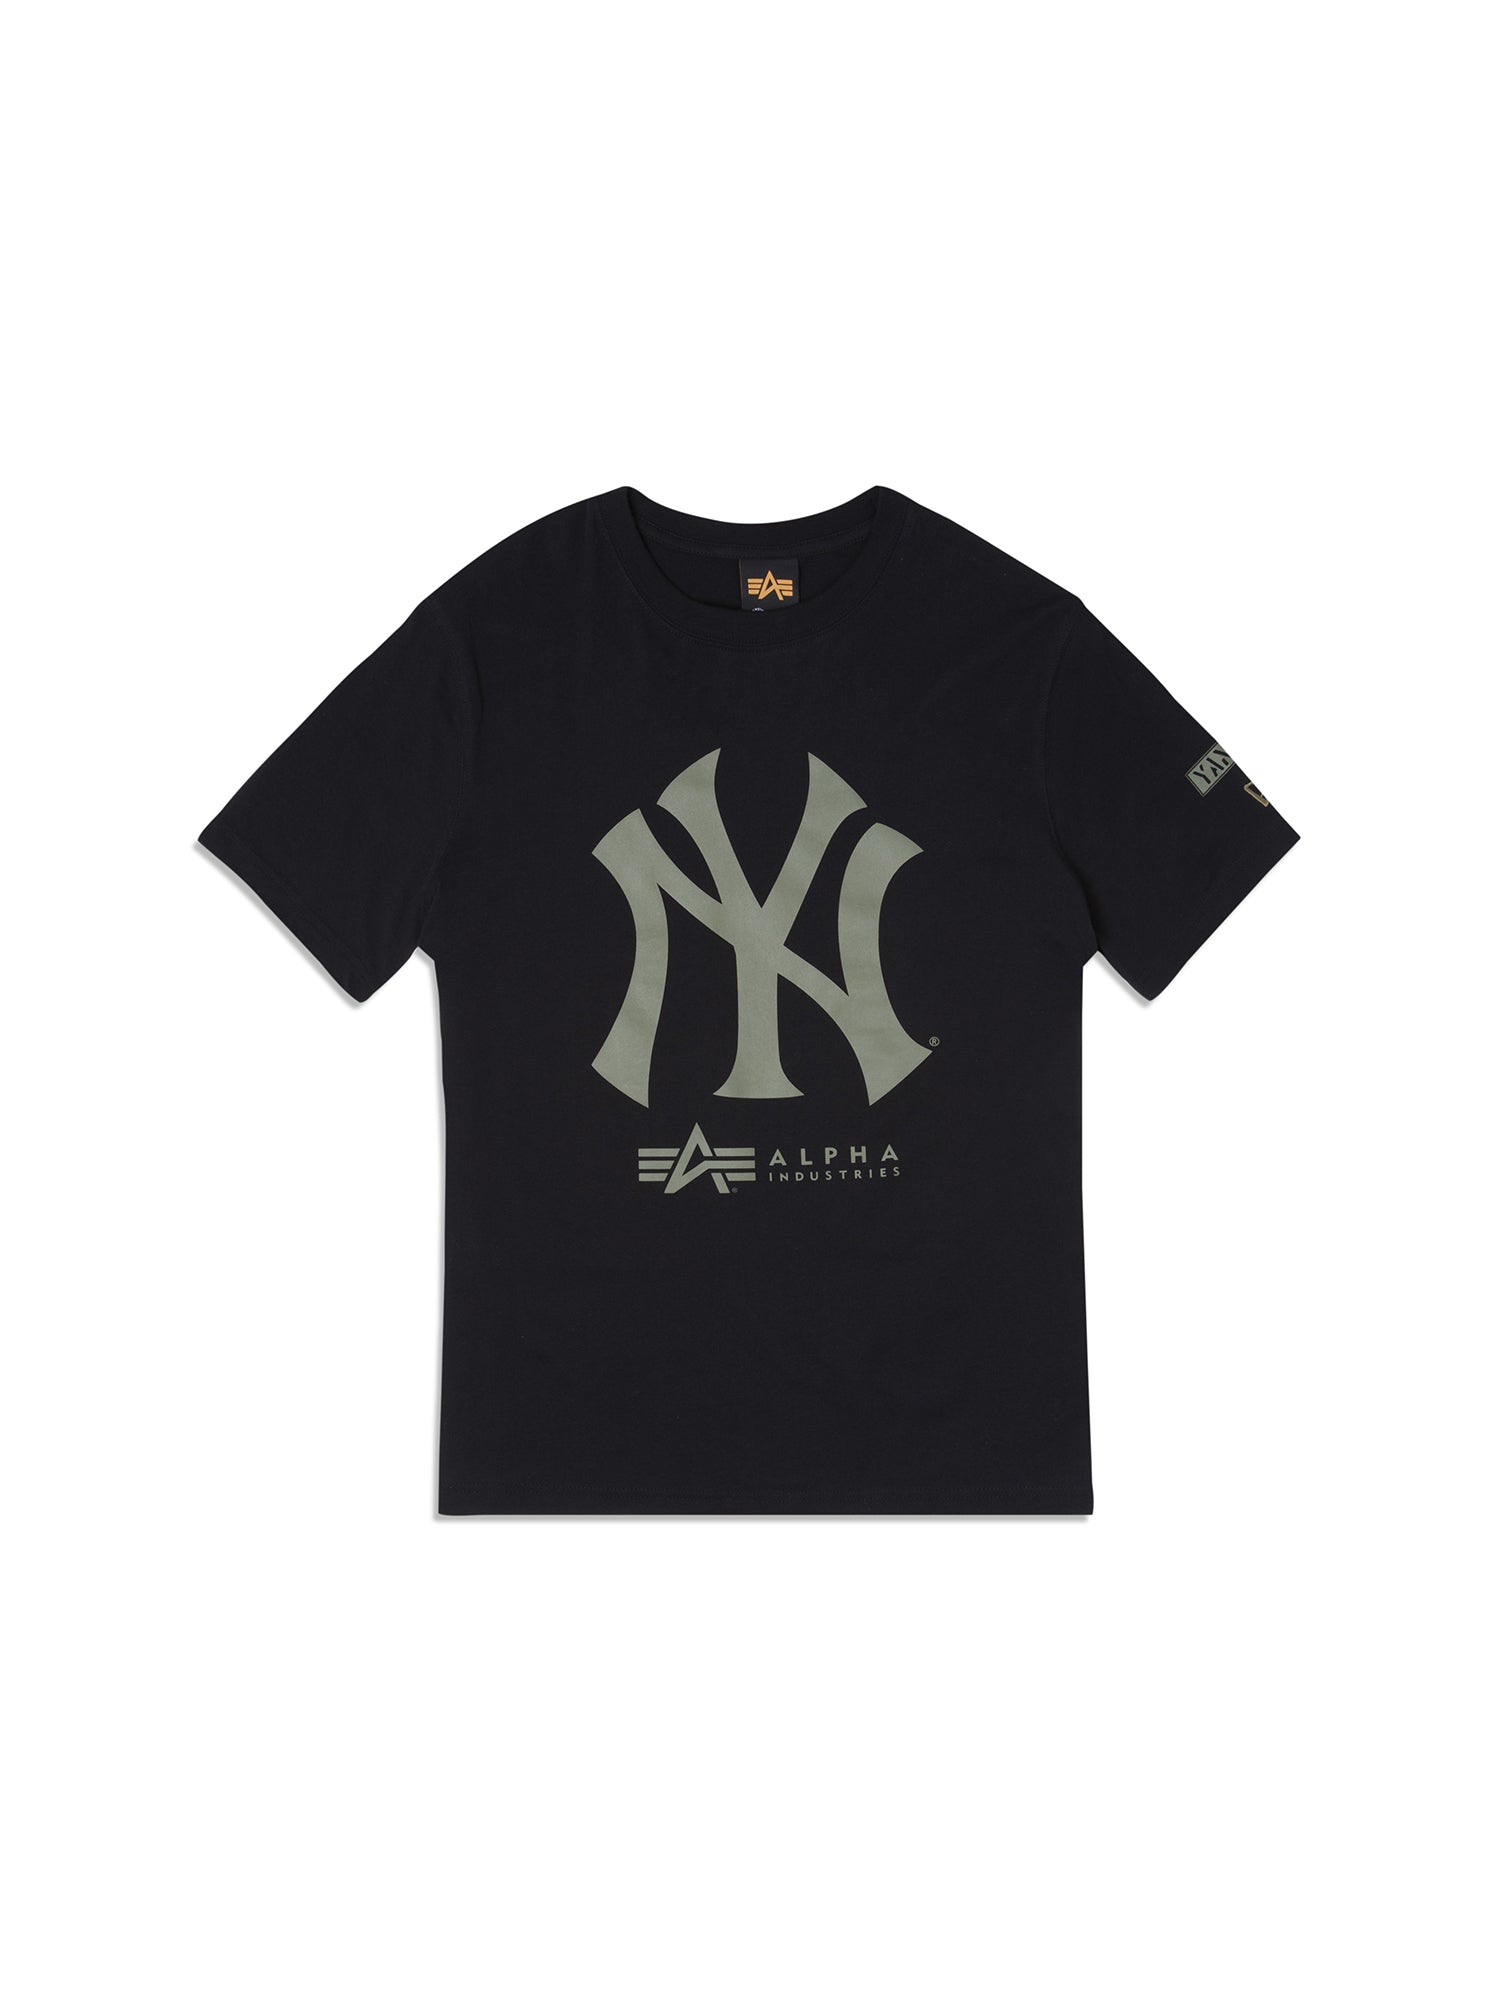 New era MLB Taping New York Yankees Short Sleeve T-Shirt White